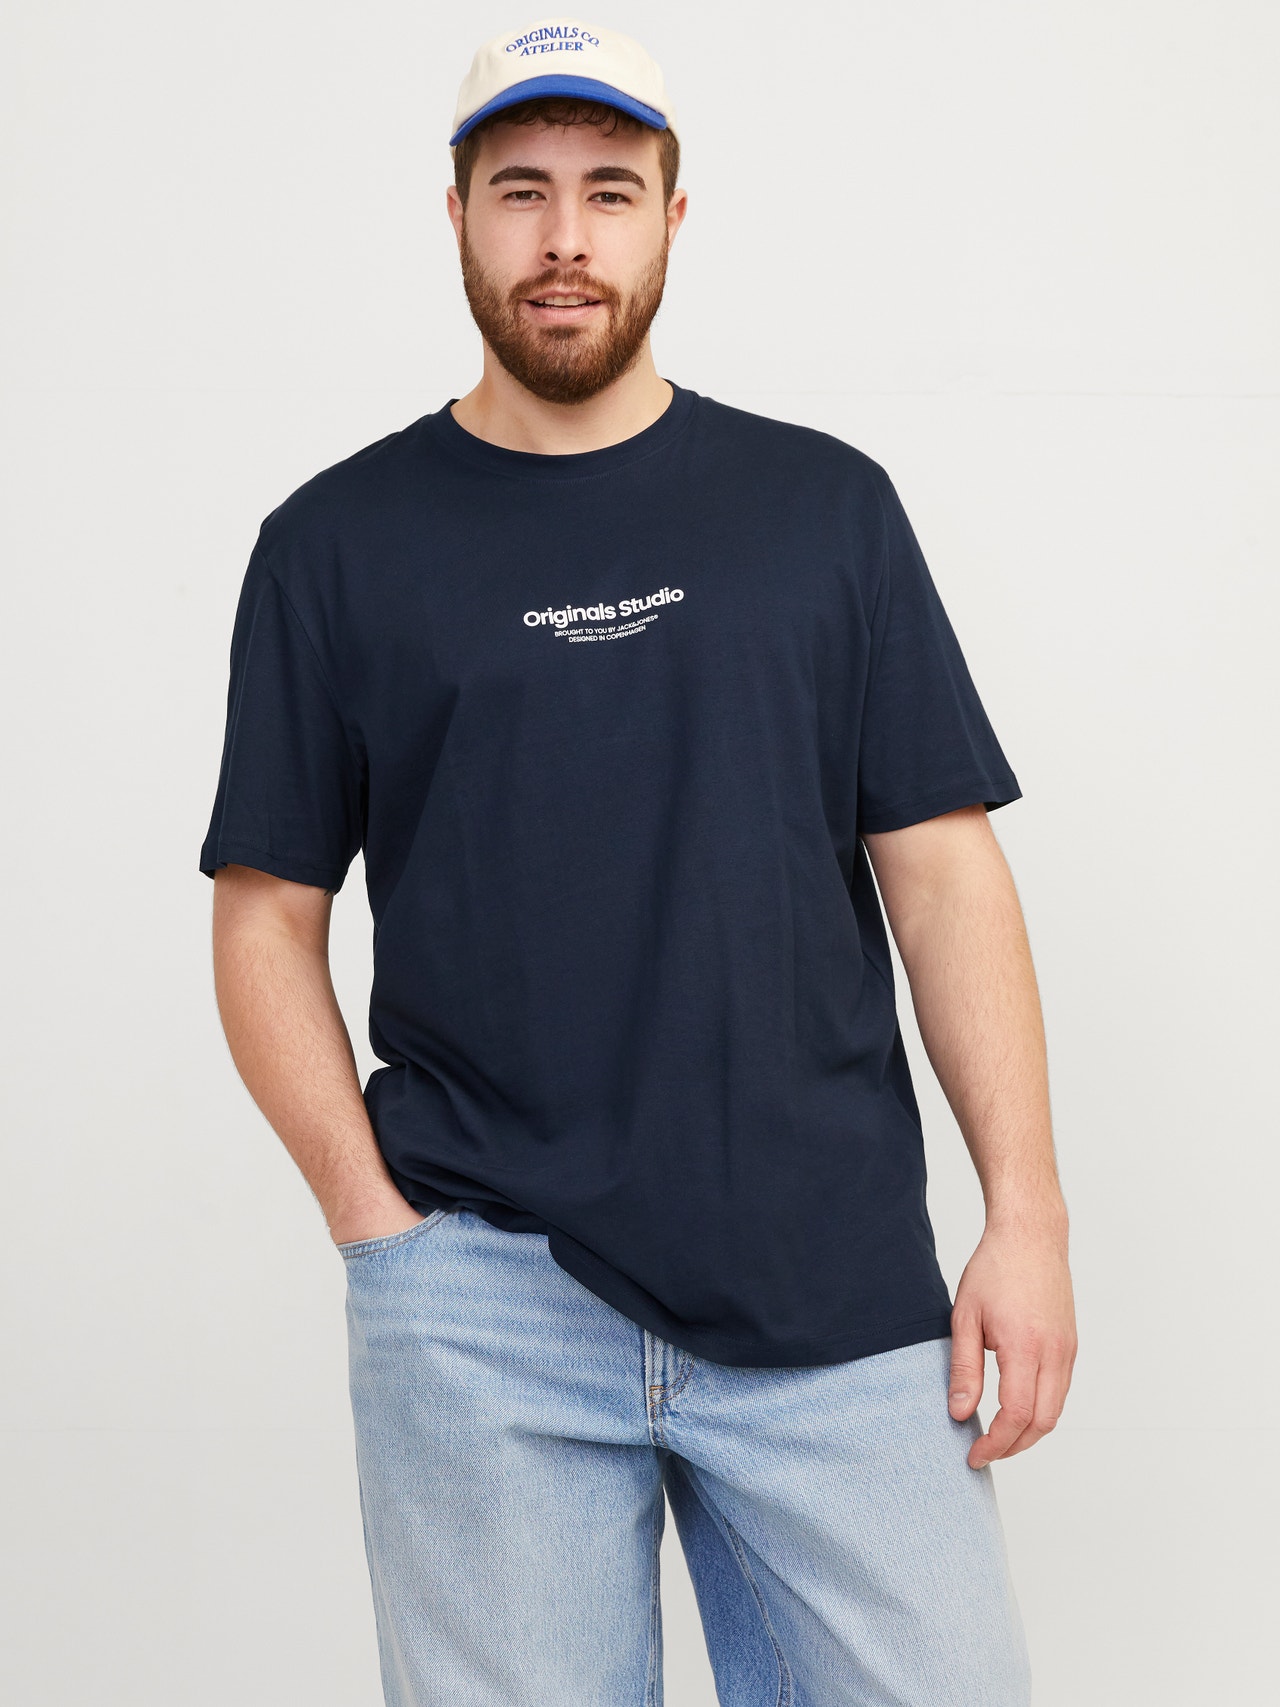 Jack & Jones Plus Size T-shirt Estampar -Sky Captain - 12248177